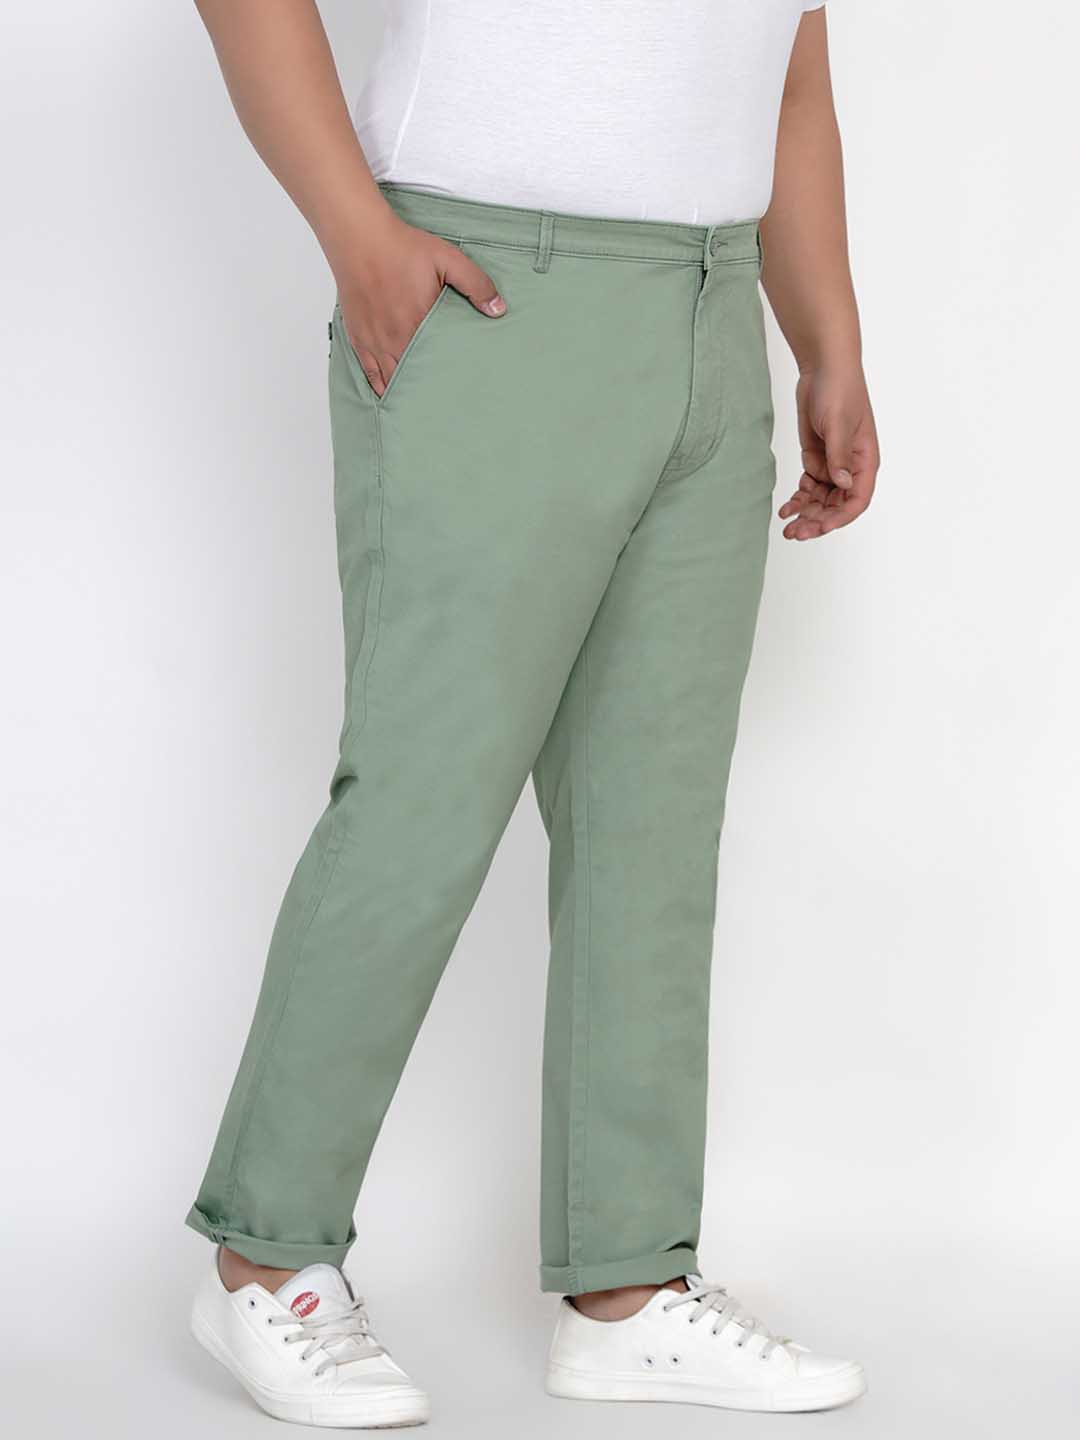 bottomwear/trousers/JPTR2195M/jptr2195m-5.jpg